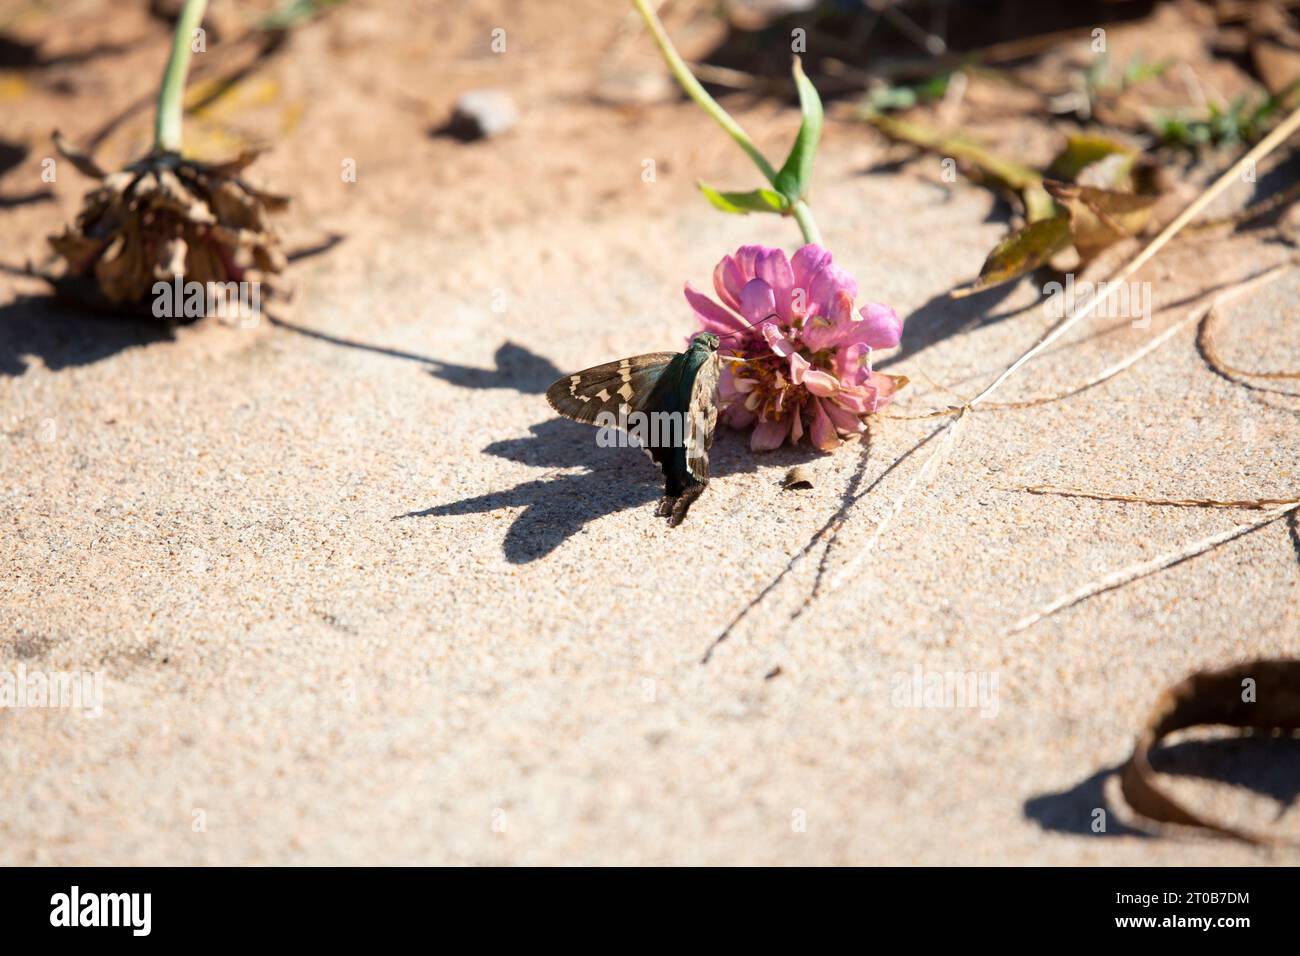 Skipper dalla coda lunga (Urbanus proteus) su un fiore di zinnia a terra con la sua ombra sul cemento Foto Stock